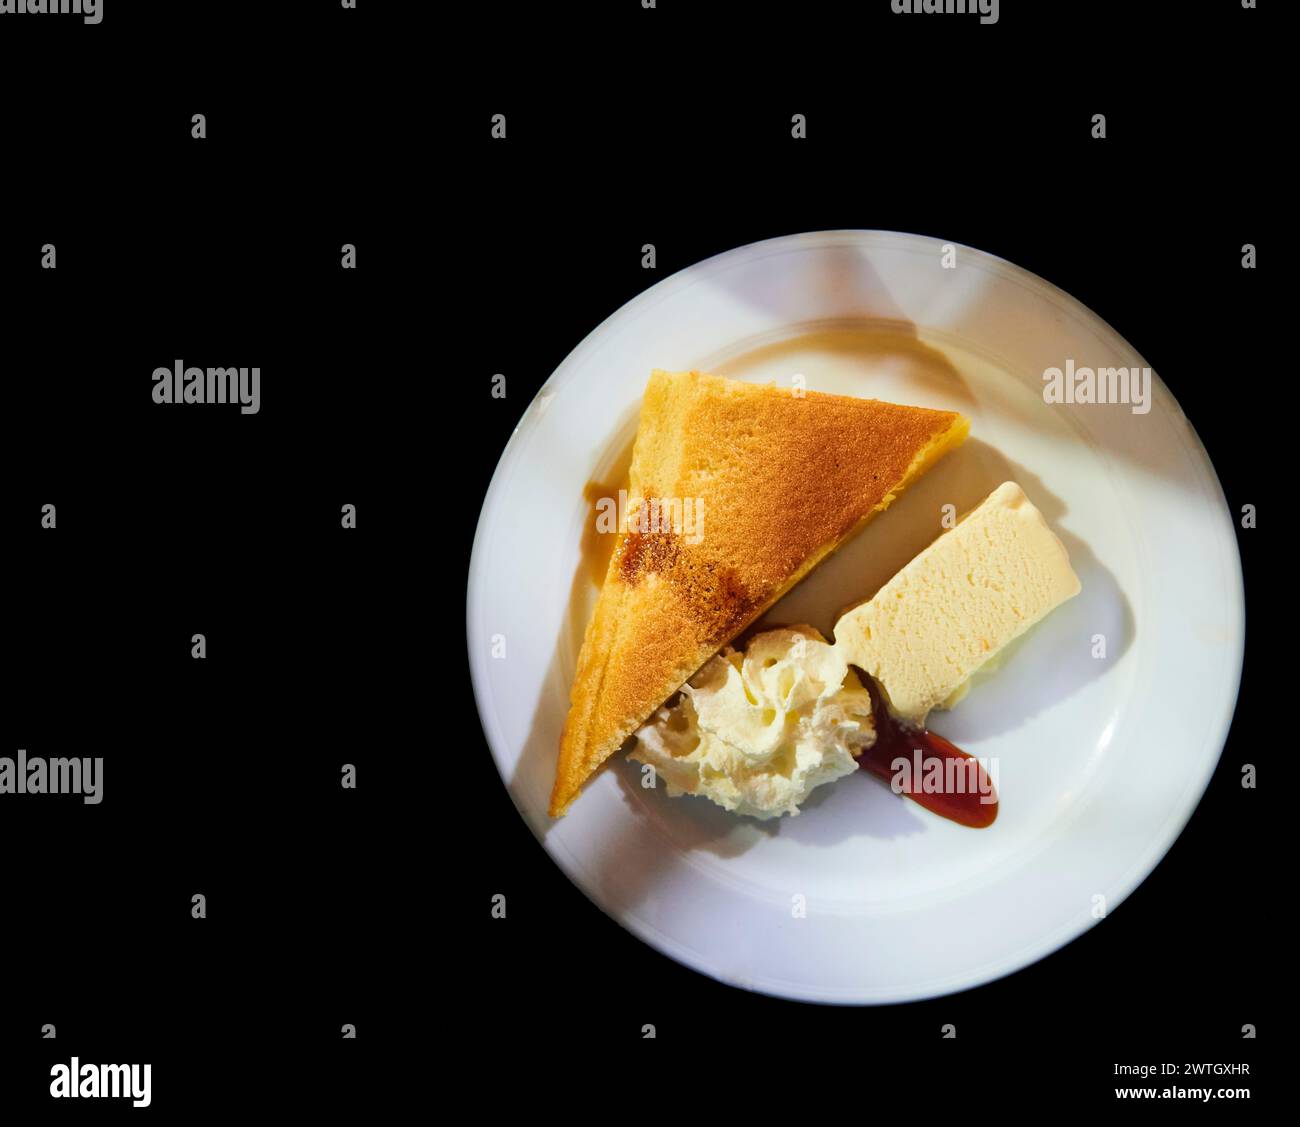 Dessertplatte mit Eis, Rahm und Käsekuchen auf schwarzem Hintergrund Stockfoto